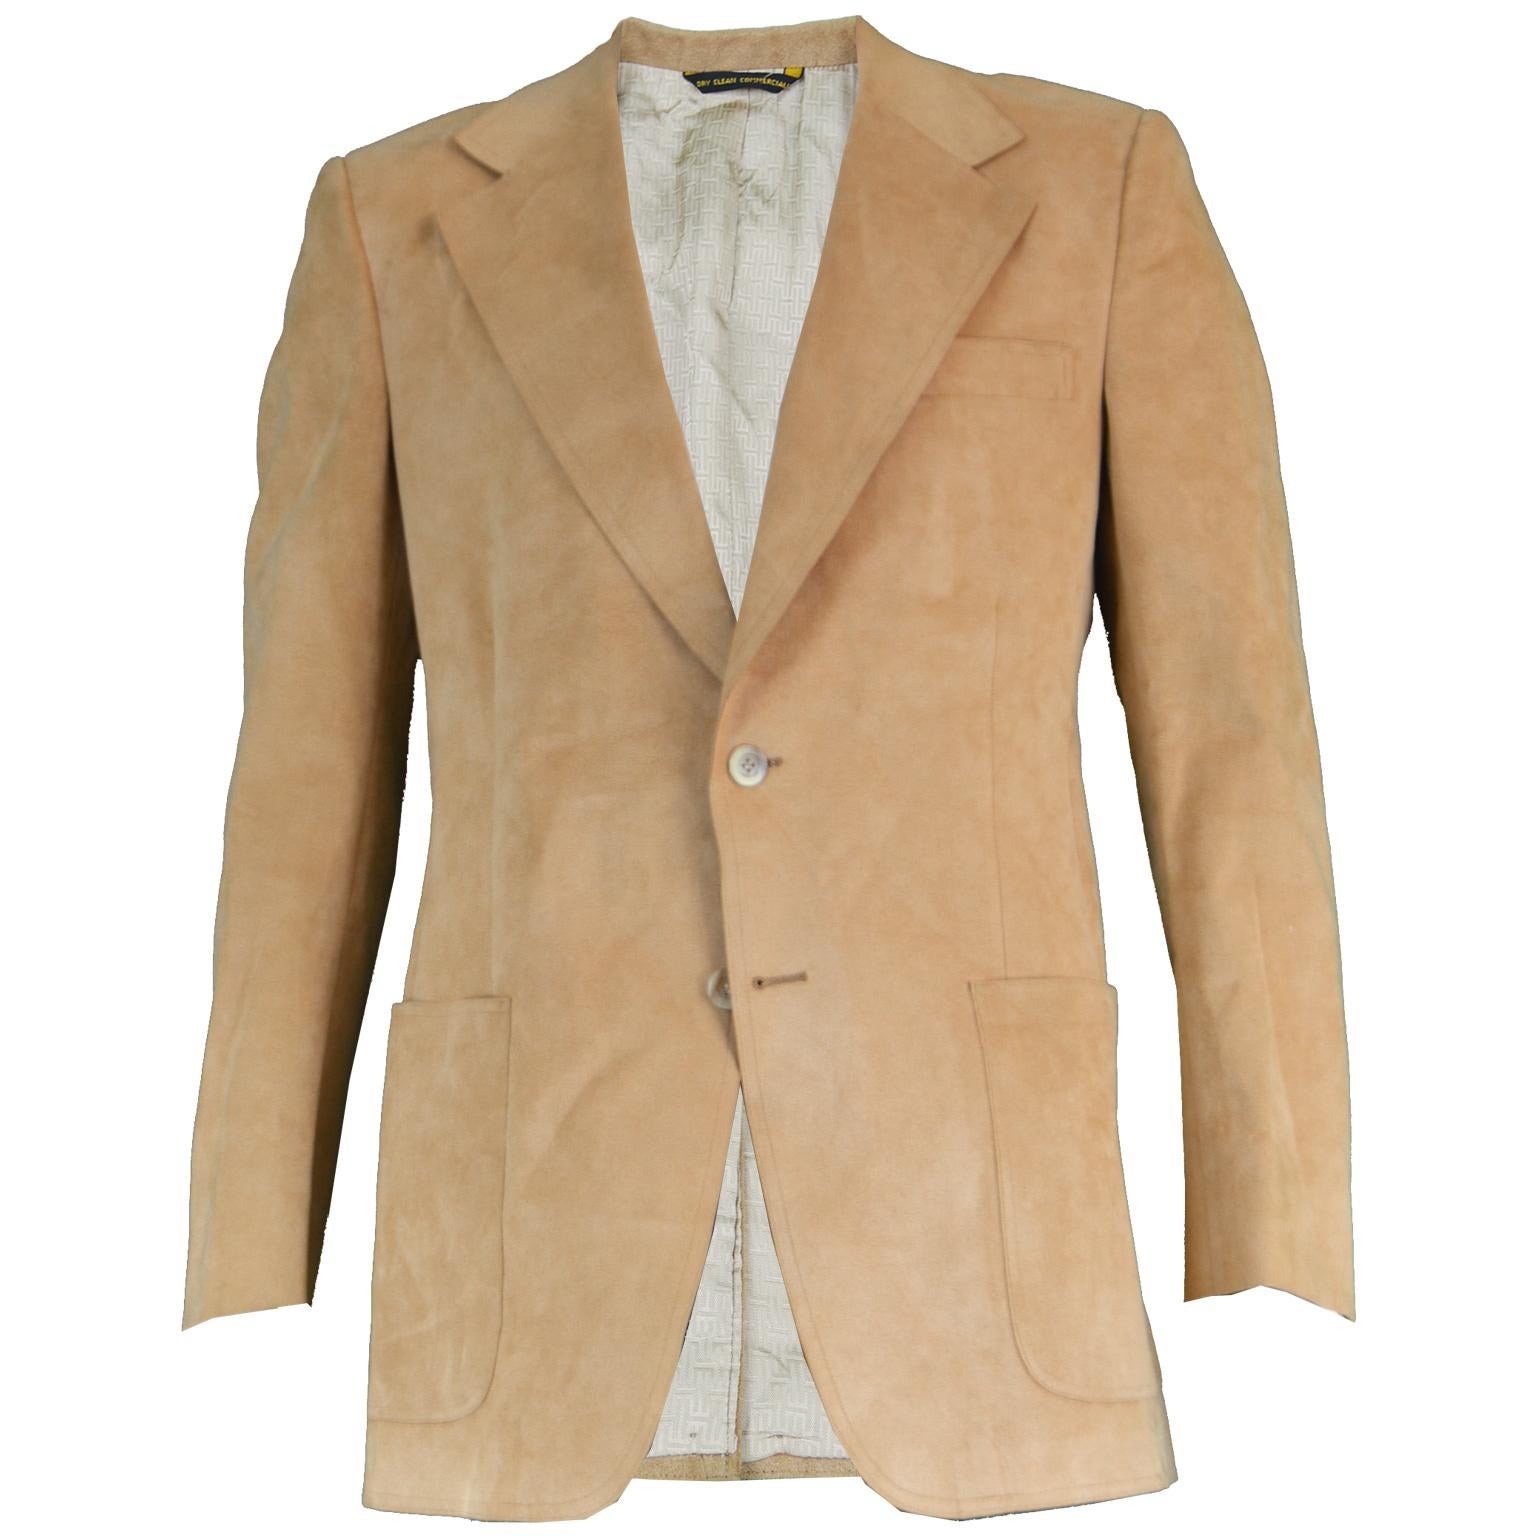 Halston for I. Magnin Men's Vintage 'Halsuede' Brown Blazer Jacket, 1970s